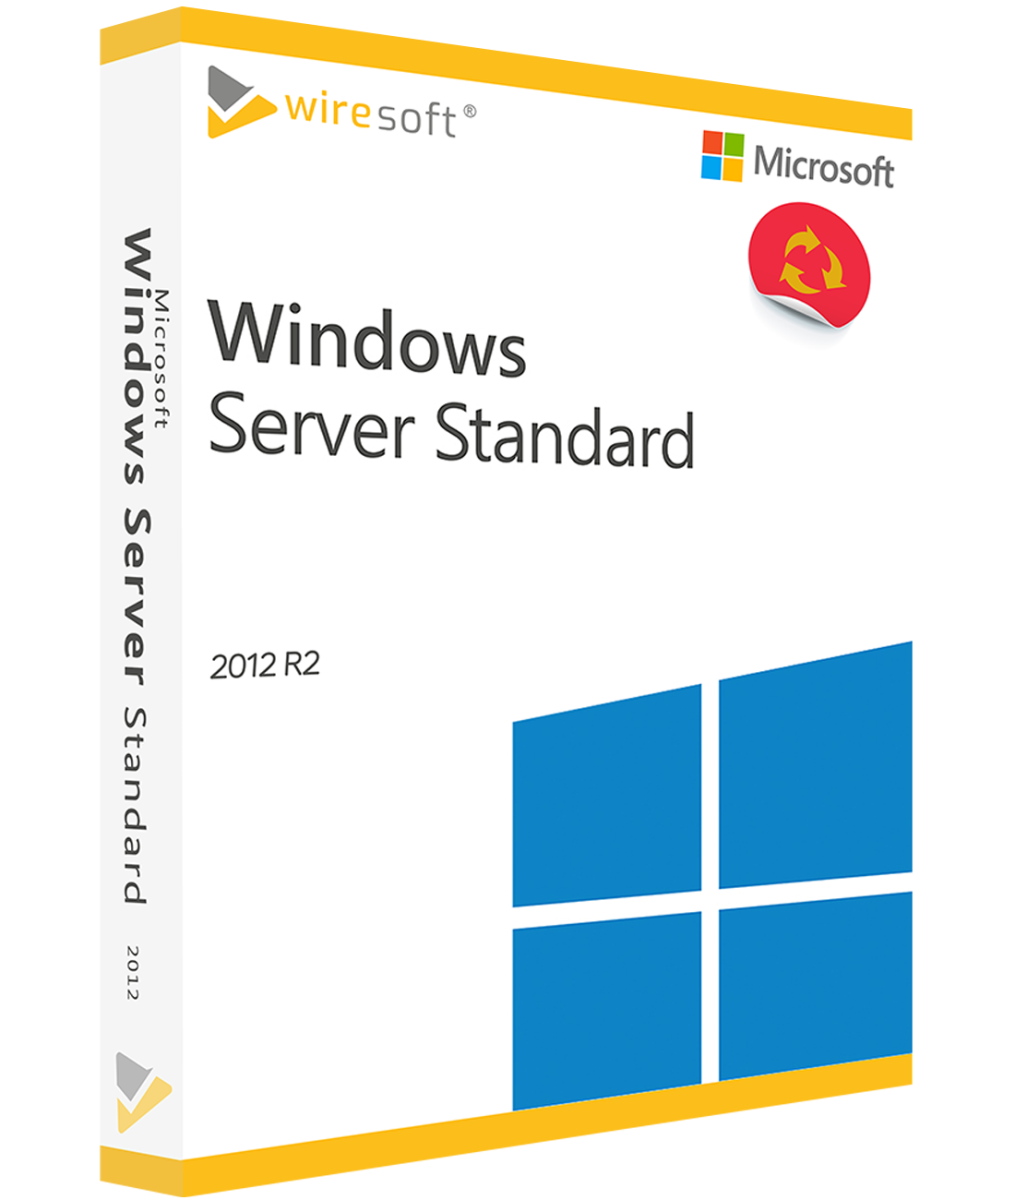 Windows Server 2012 Microsoft Windows Server Server Software Shop Wiresoft Lizenzen Online 6949